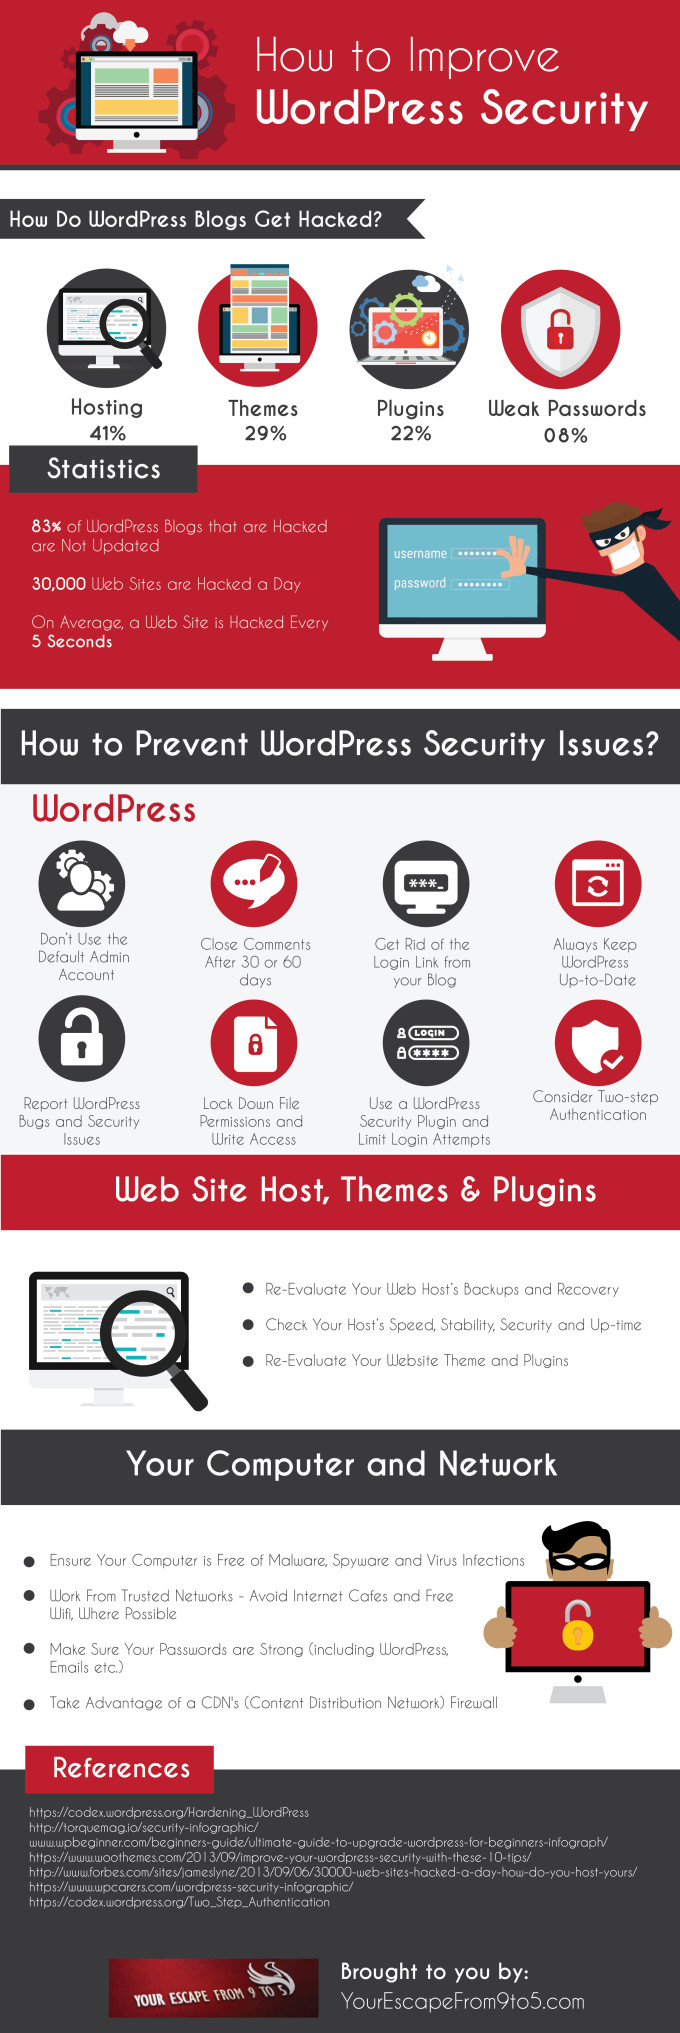 Wordpress sicurezza infografica